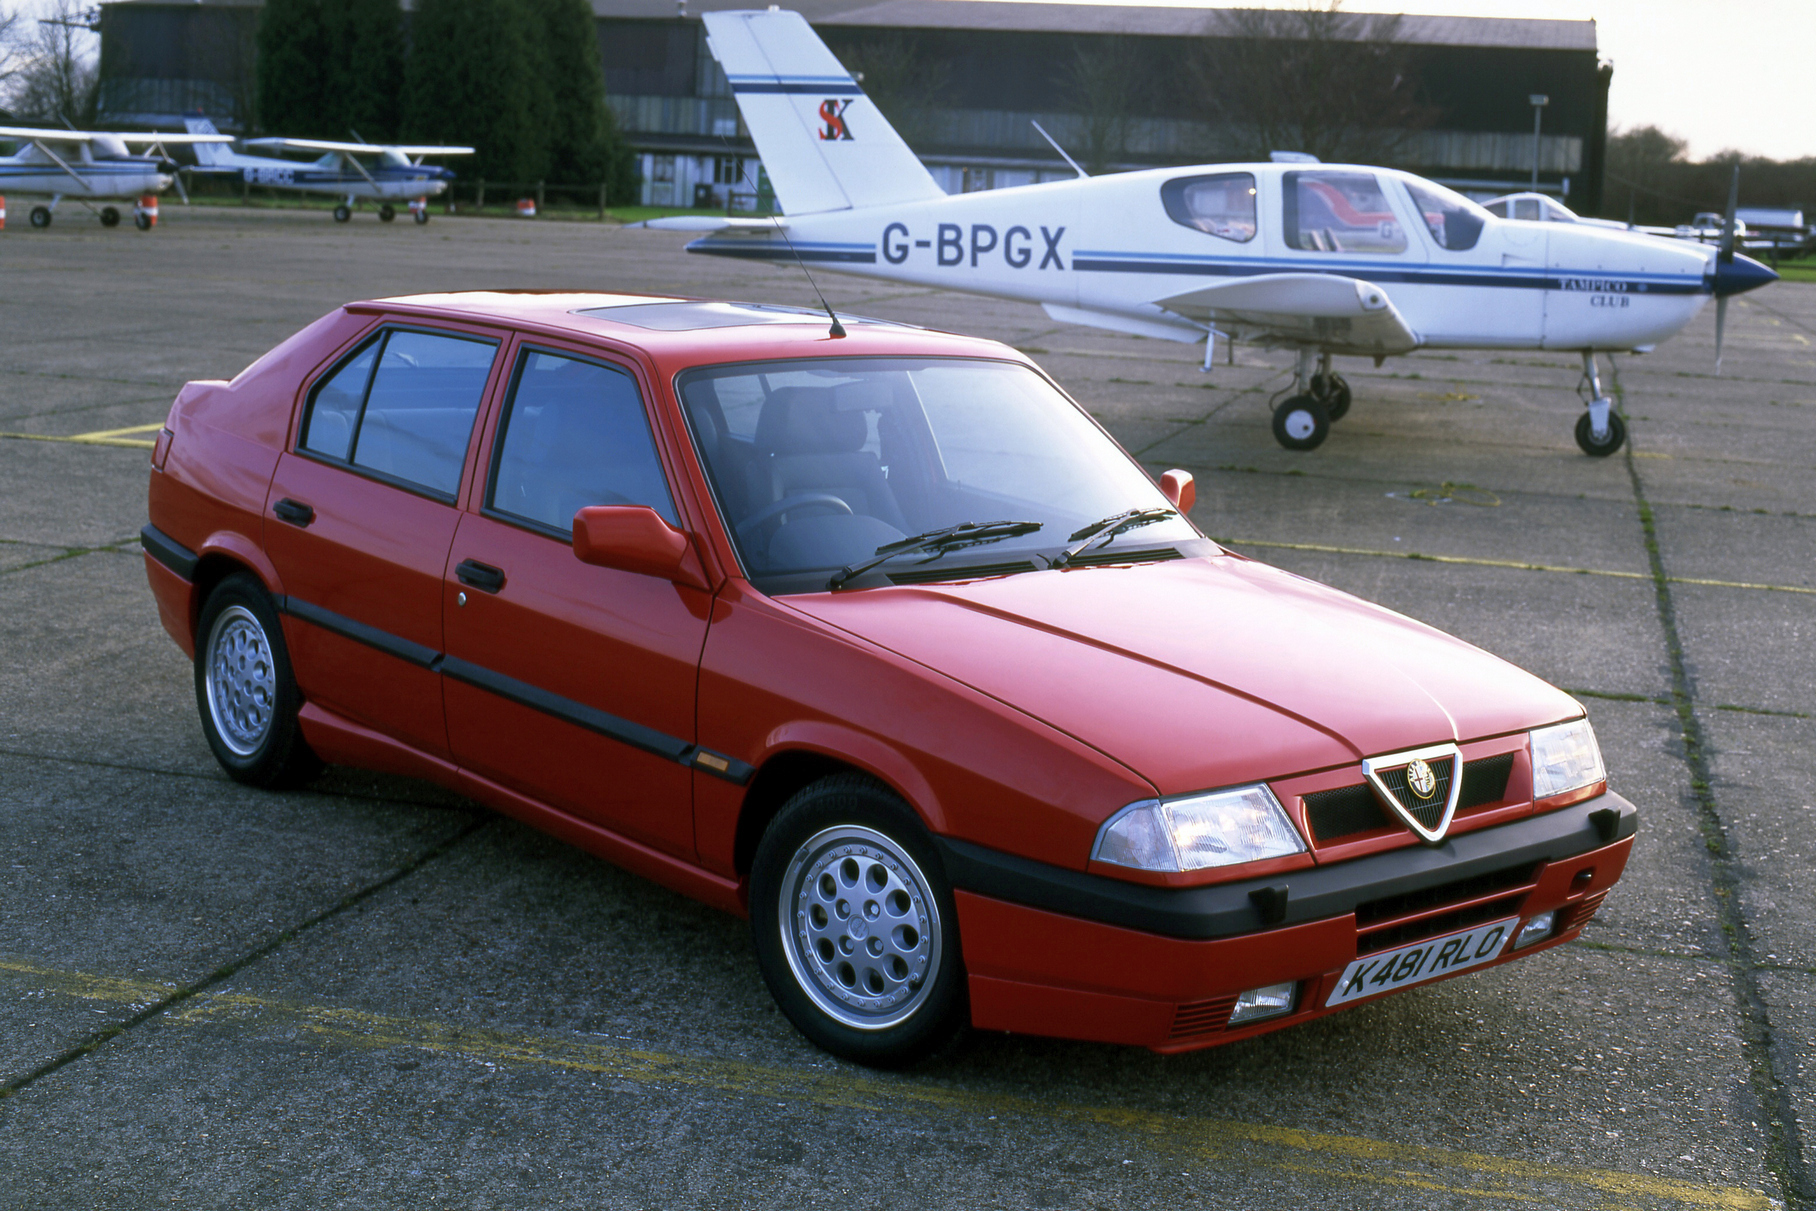 ###  «Тридцать третья» — один из самых массовых автомобилей в истории марки Alfa Romeo: за одиннадцать лет его производства был выпущен почти миллион экземпляров. Она была преемницей легендарной модели Alfasud семидесятых годов, от которой унаследовала четырёхцилиндровый оппозитный двигатель и гениально-простое шасси. А вместе с ними и азартный характер: крутильный мотор, жестковатую подвеску, остроту реакций, грубоватость манер. Правда, из-за удаления переднего стабилизатора «тридцать третья» кренилась сильнее предшественника. В то же время, обе машины всегда критиковали за то, что классное шасси явно превосходило по возможностям слабенькие моторы объёмом 1,2–1,5 литра. Улучшил ситуацию двигатель 1.7, появившийся в 1986 году. Но по-настоящему раскрыл возможности машины его 16-клапанный вариант мощностью 135 лошадиных сил. Увы, появившийся уже на закате конвейерной жизни — после большого рестайлинга в 1990 году. С ним клинообразный лифтбек был способен разогнаться до 100 километров в час за 9,4 секунды и даже преодолеть отметку в 200 километров в час. Кроме того, был предусмотрен даже вариант с кузовом универсал и версия «Permanent 4» с постоянным полным приводом.